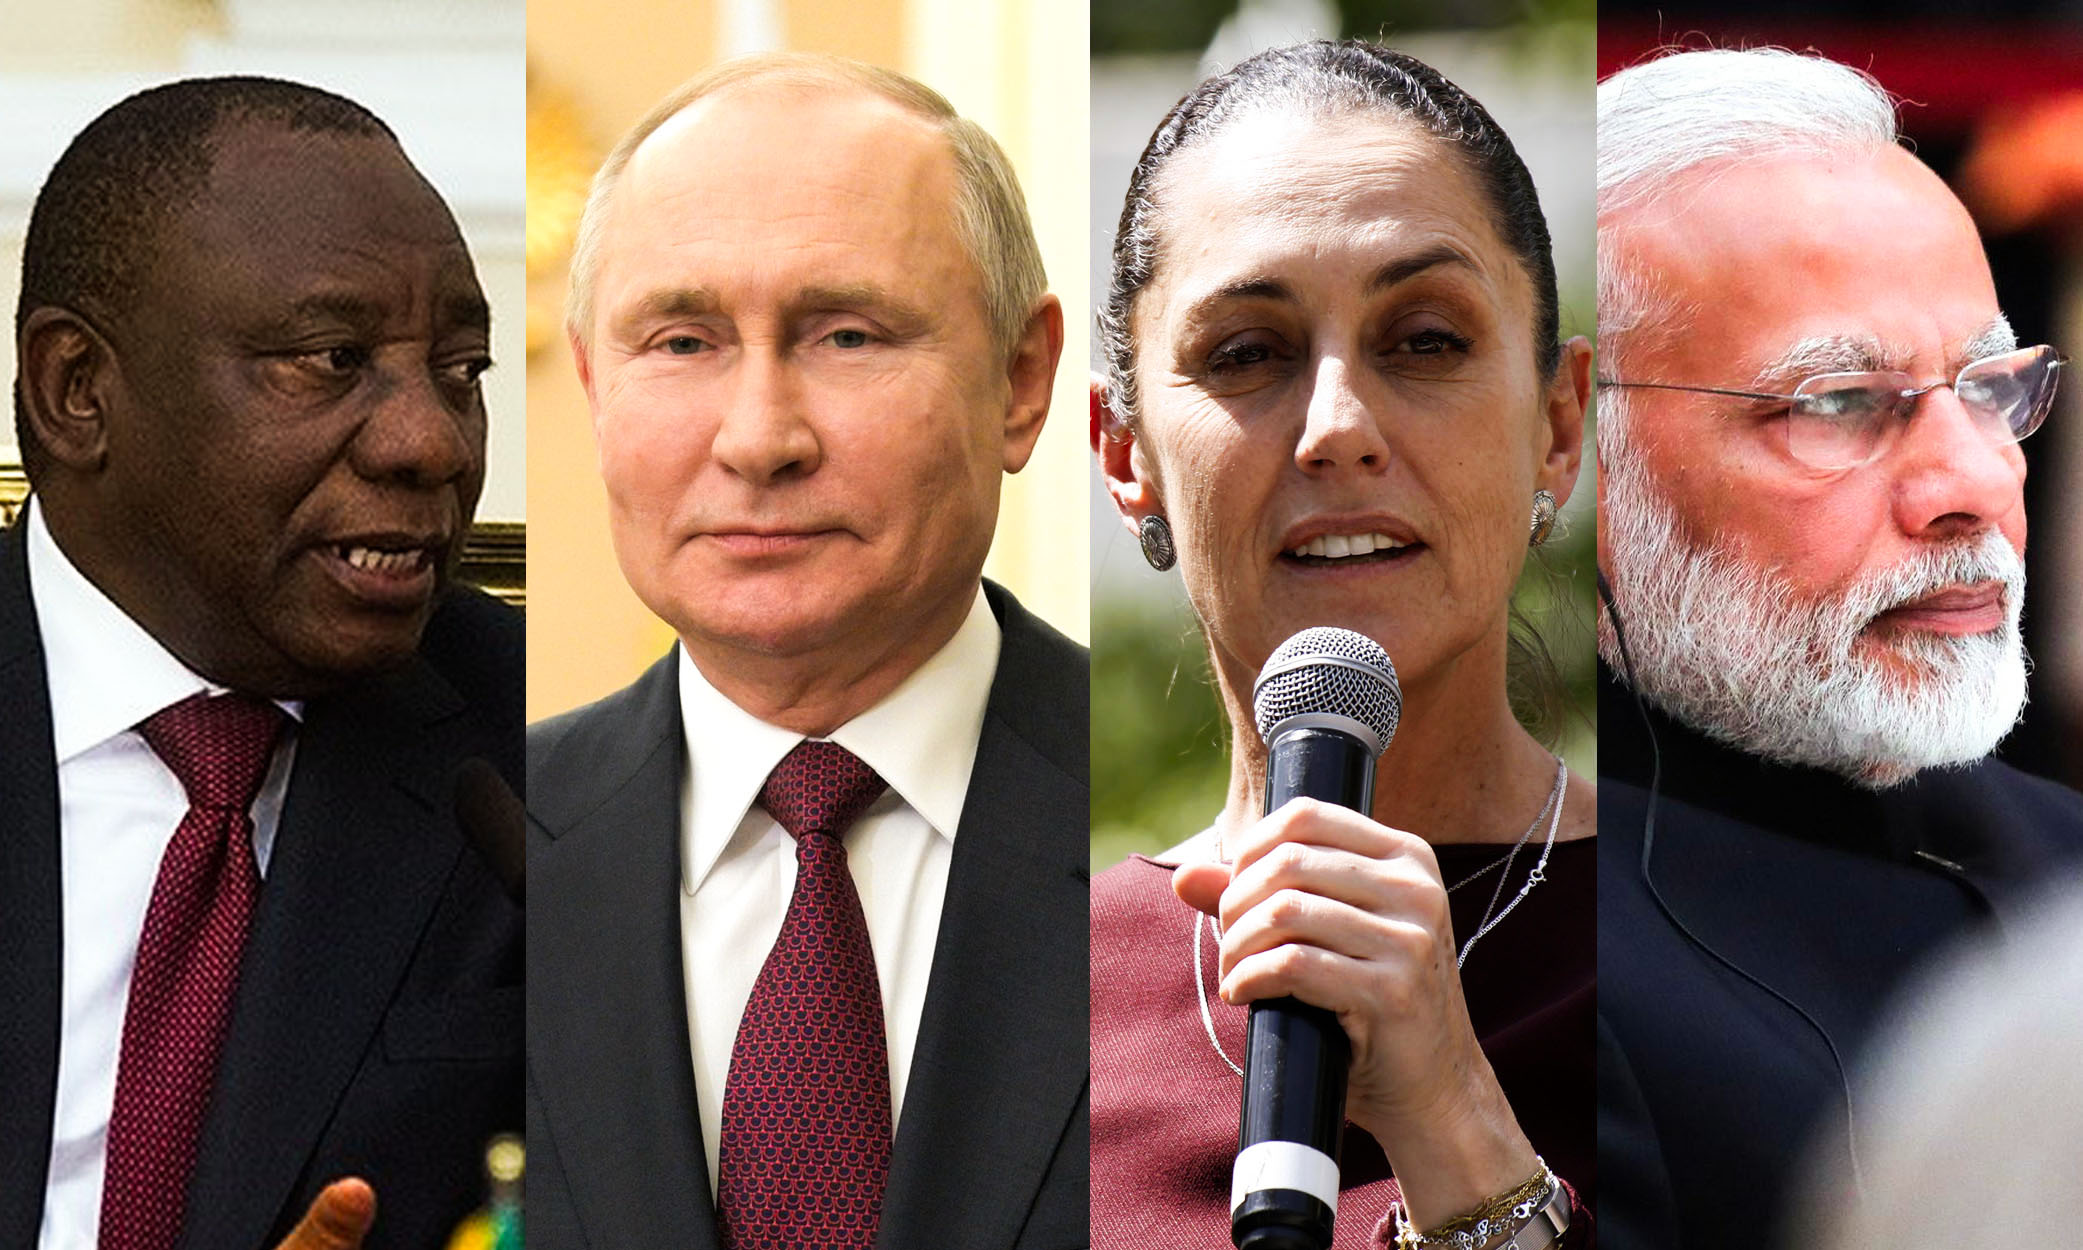 ستكون كلوديا شينباوم، وفلاديمير بوتين، وسيريل رامافوزا، وناريندرا مودي شخصيات رئيسية في أكبر عام انتخابي في التاريخ.